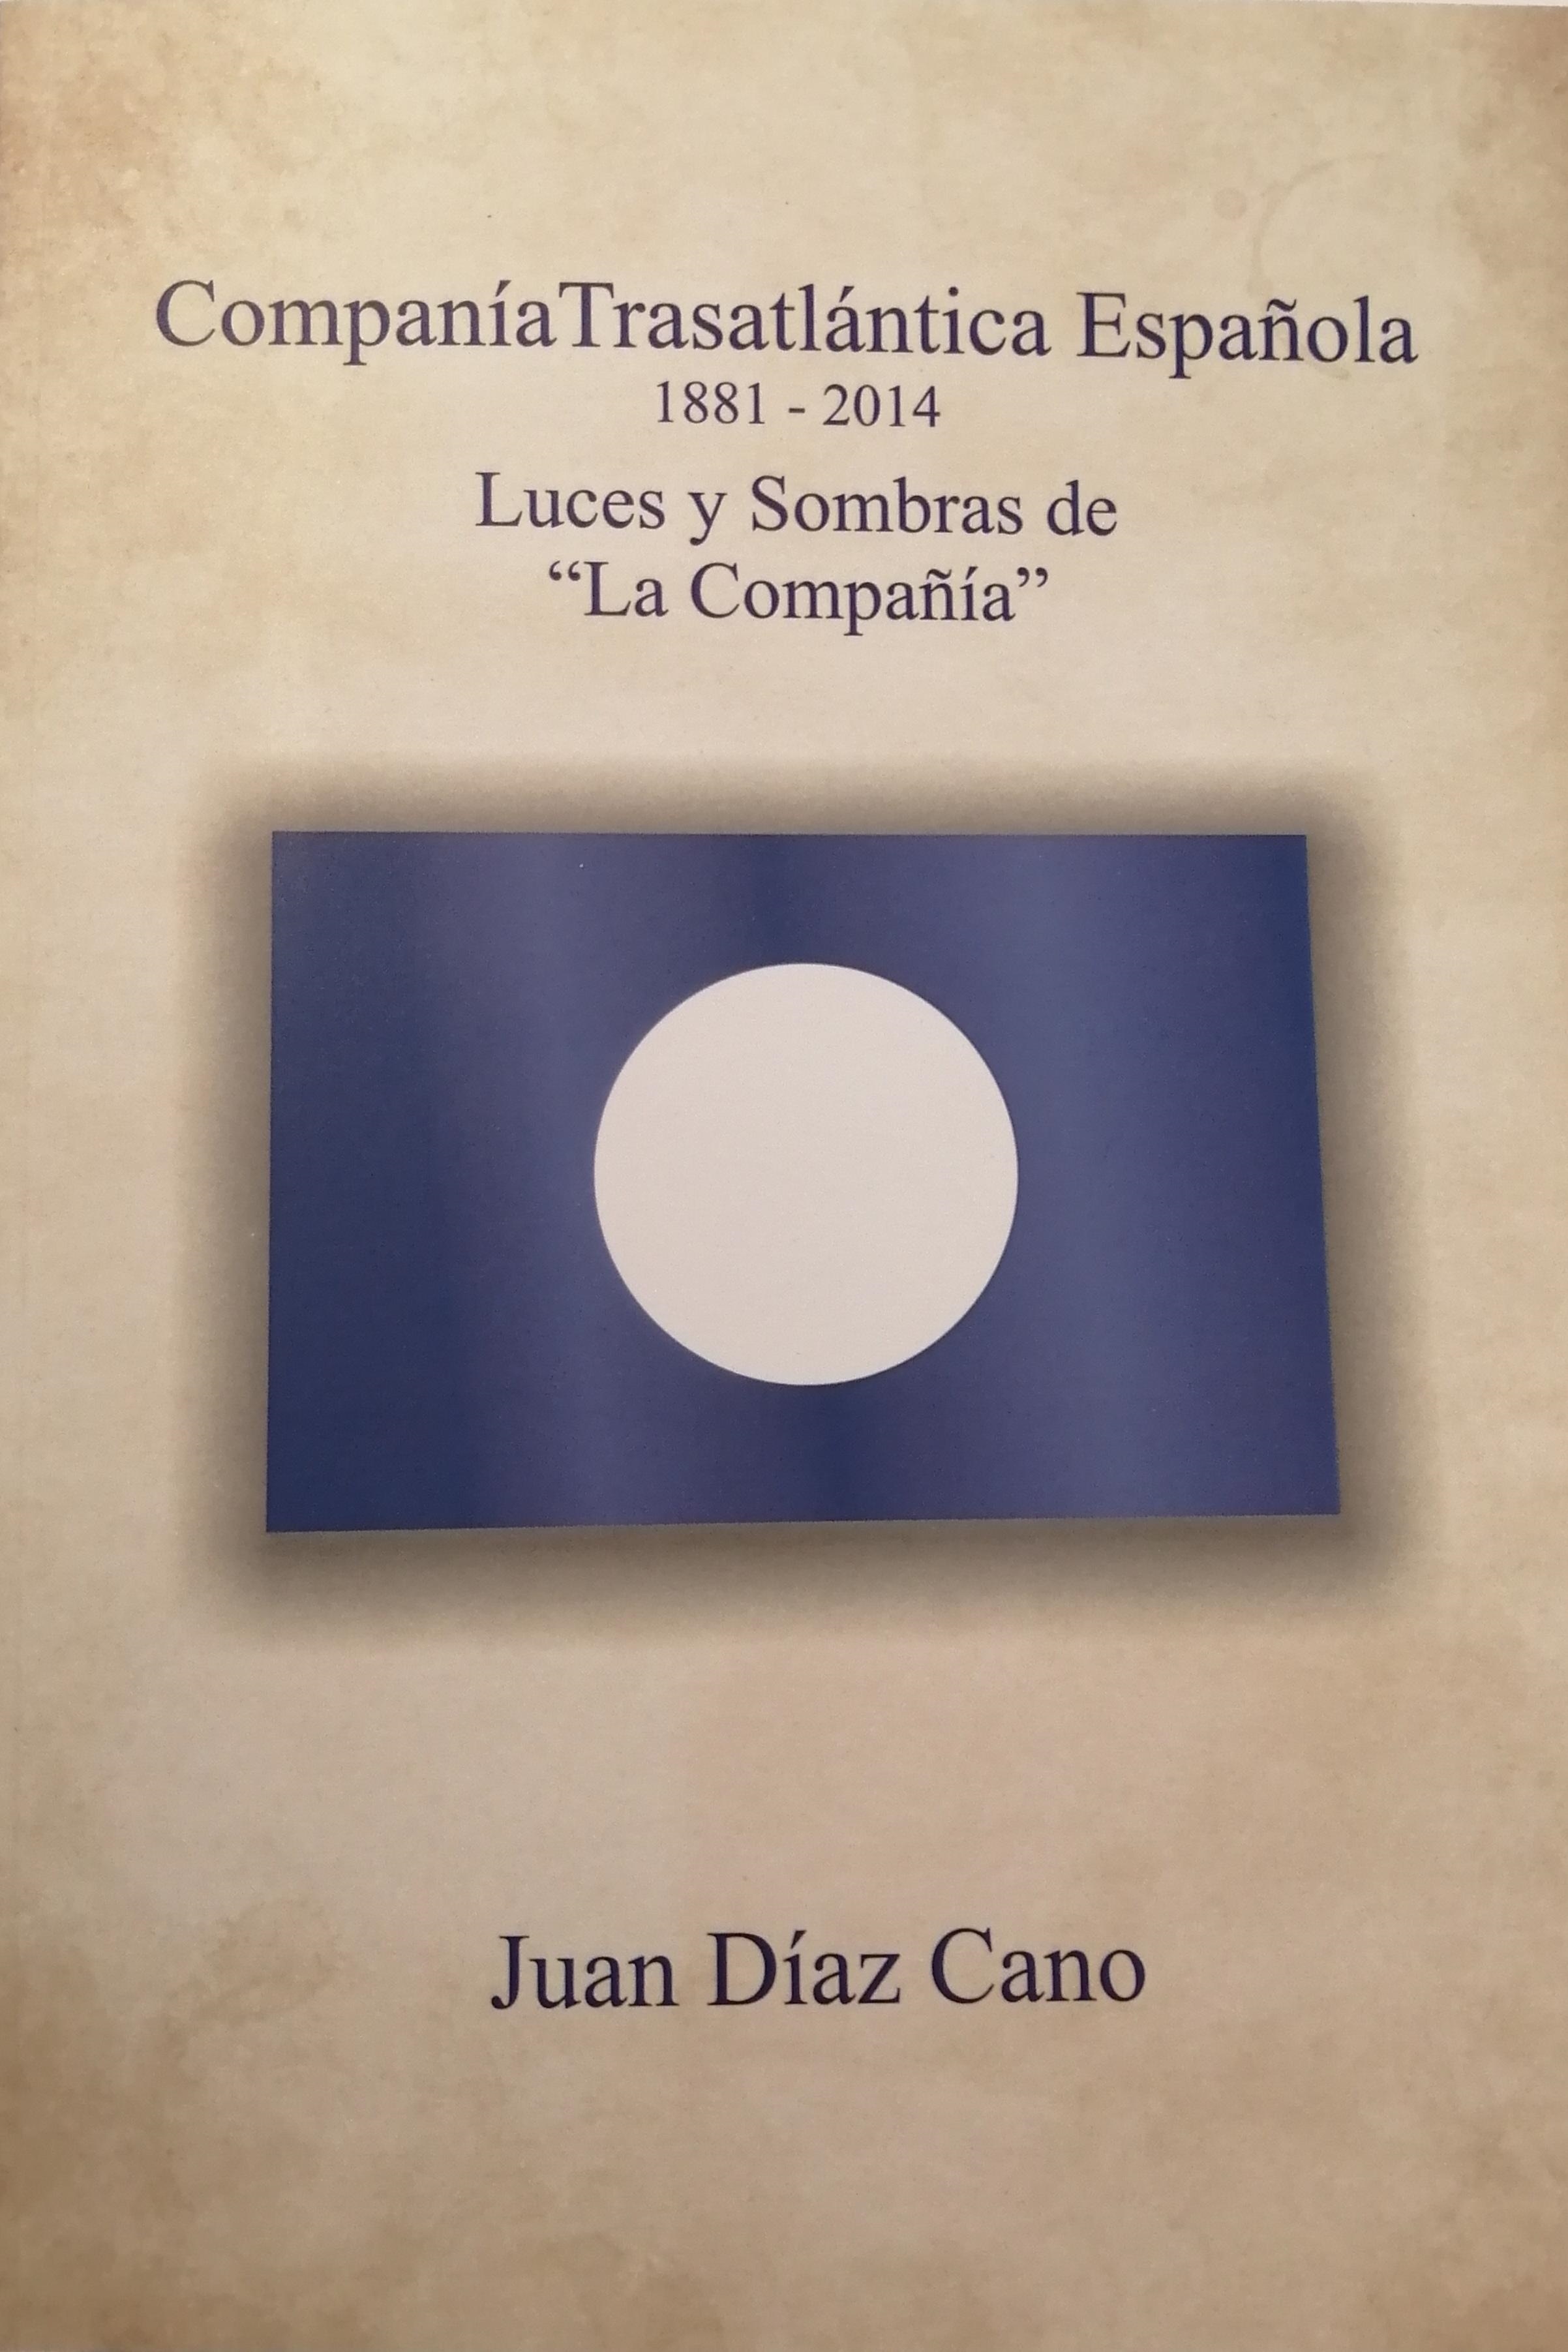 Compañia Trasatlántica Española, 1881/2014, luces y sombras de "La Compañía"